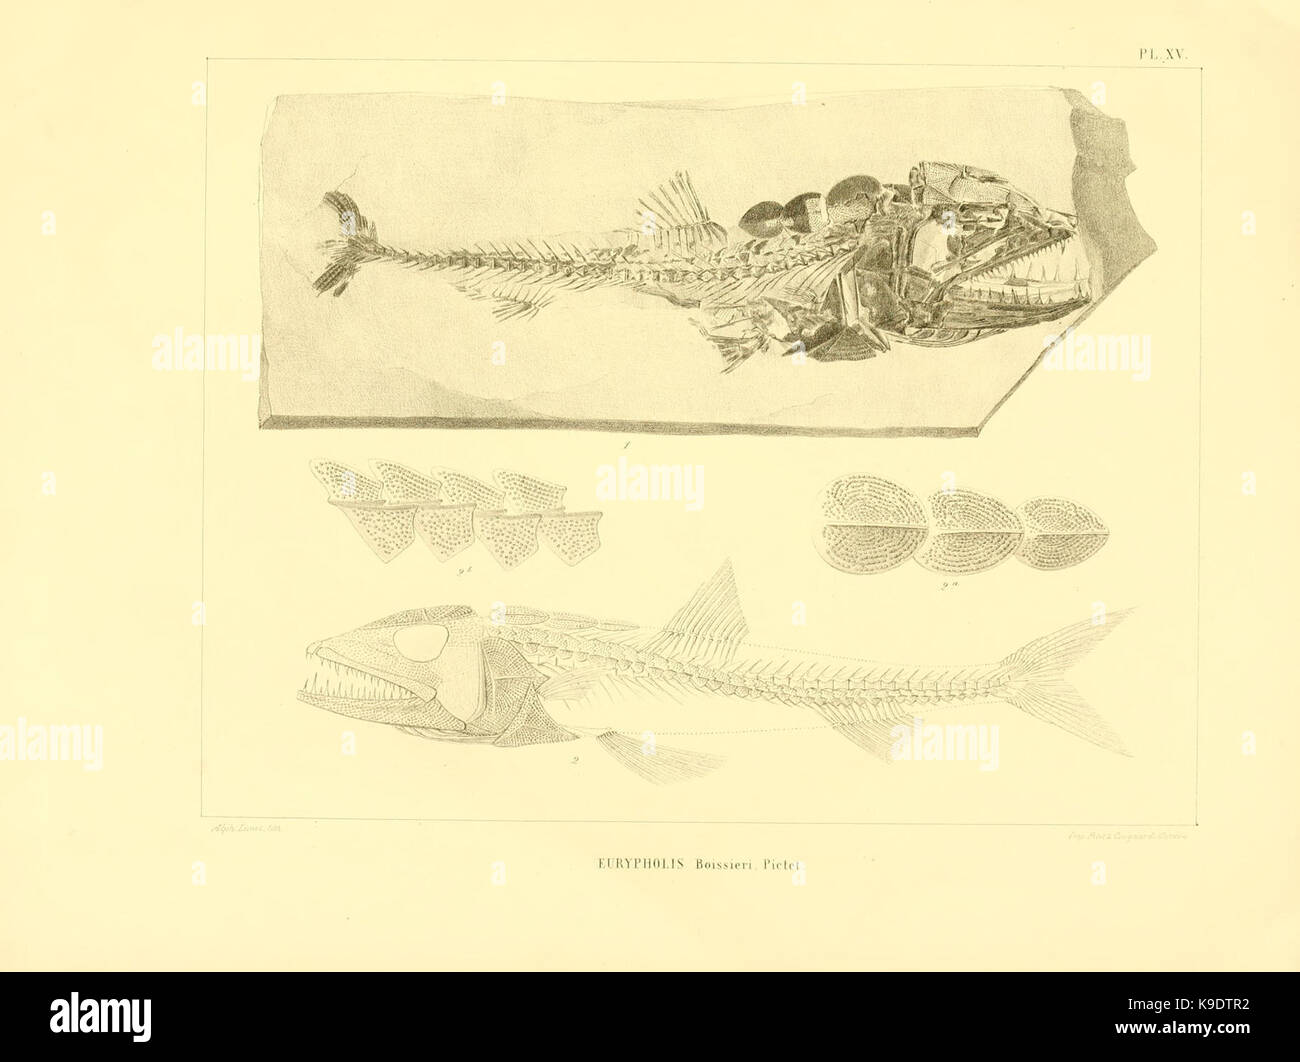 Nouvelles recherches sur les poissons fossiles du Mont Liban (Pl. XV) BHL8532204 Stock Photo